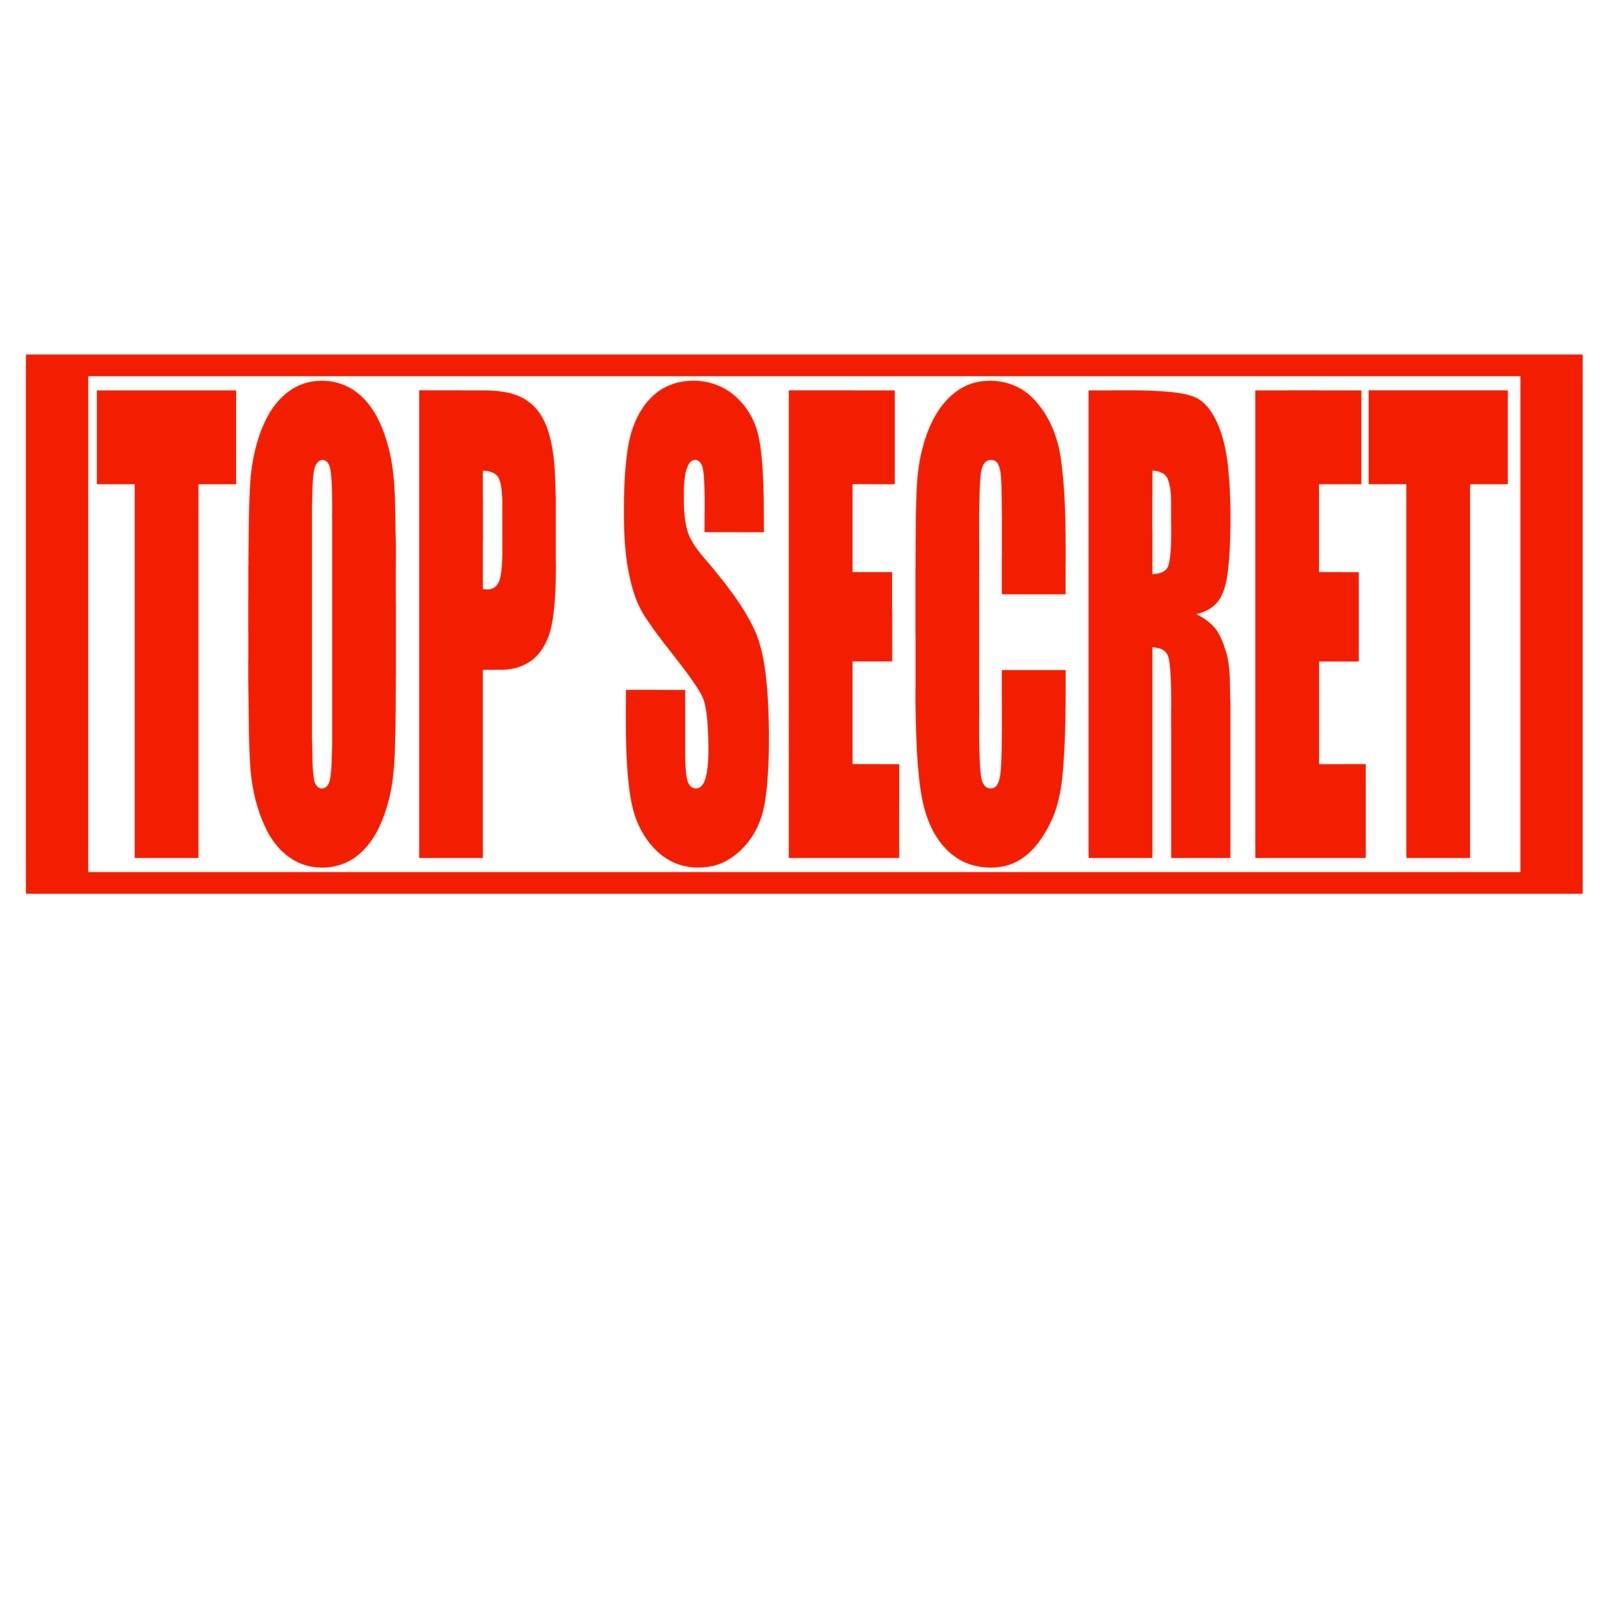 Top secret by carmenbobo